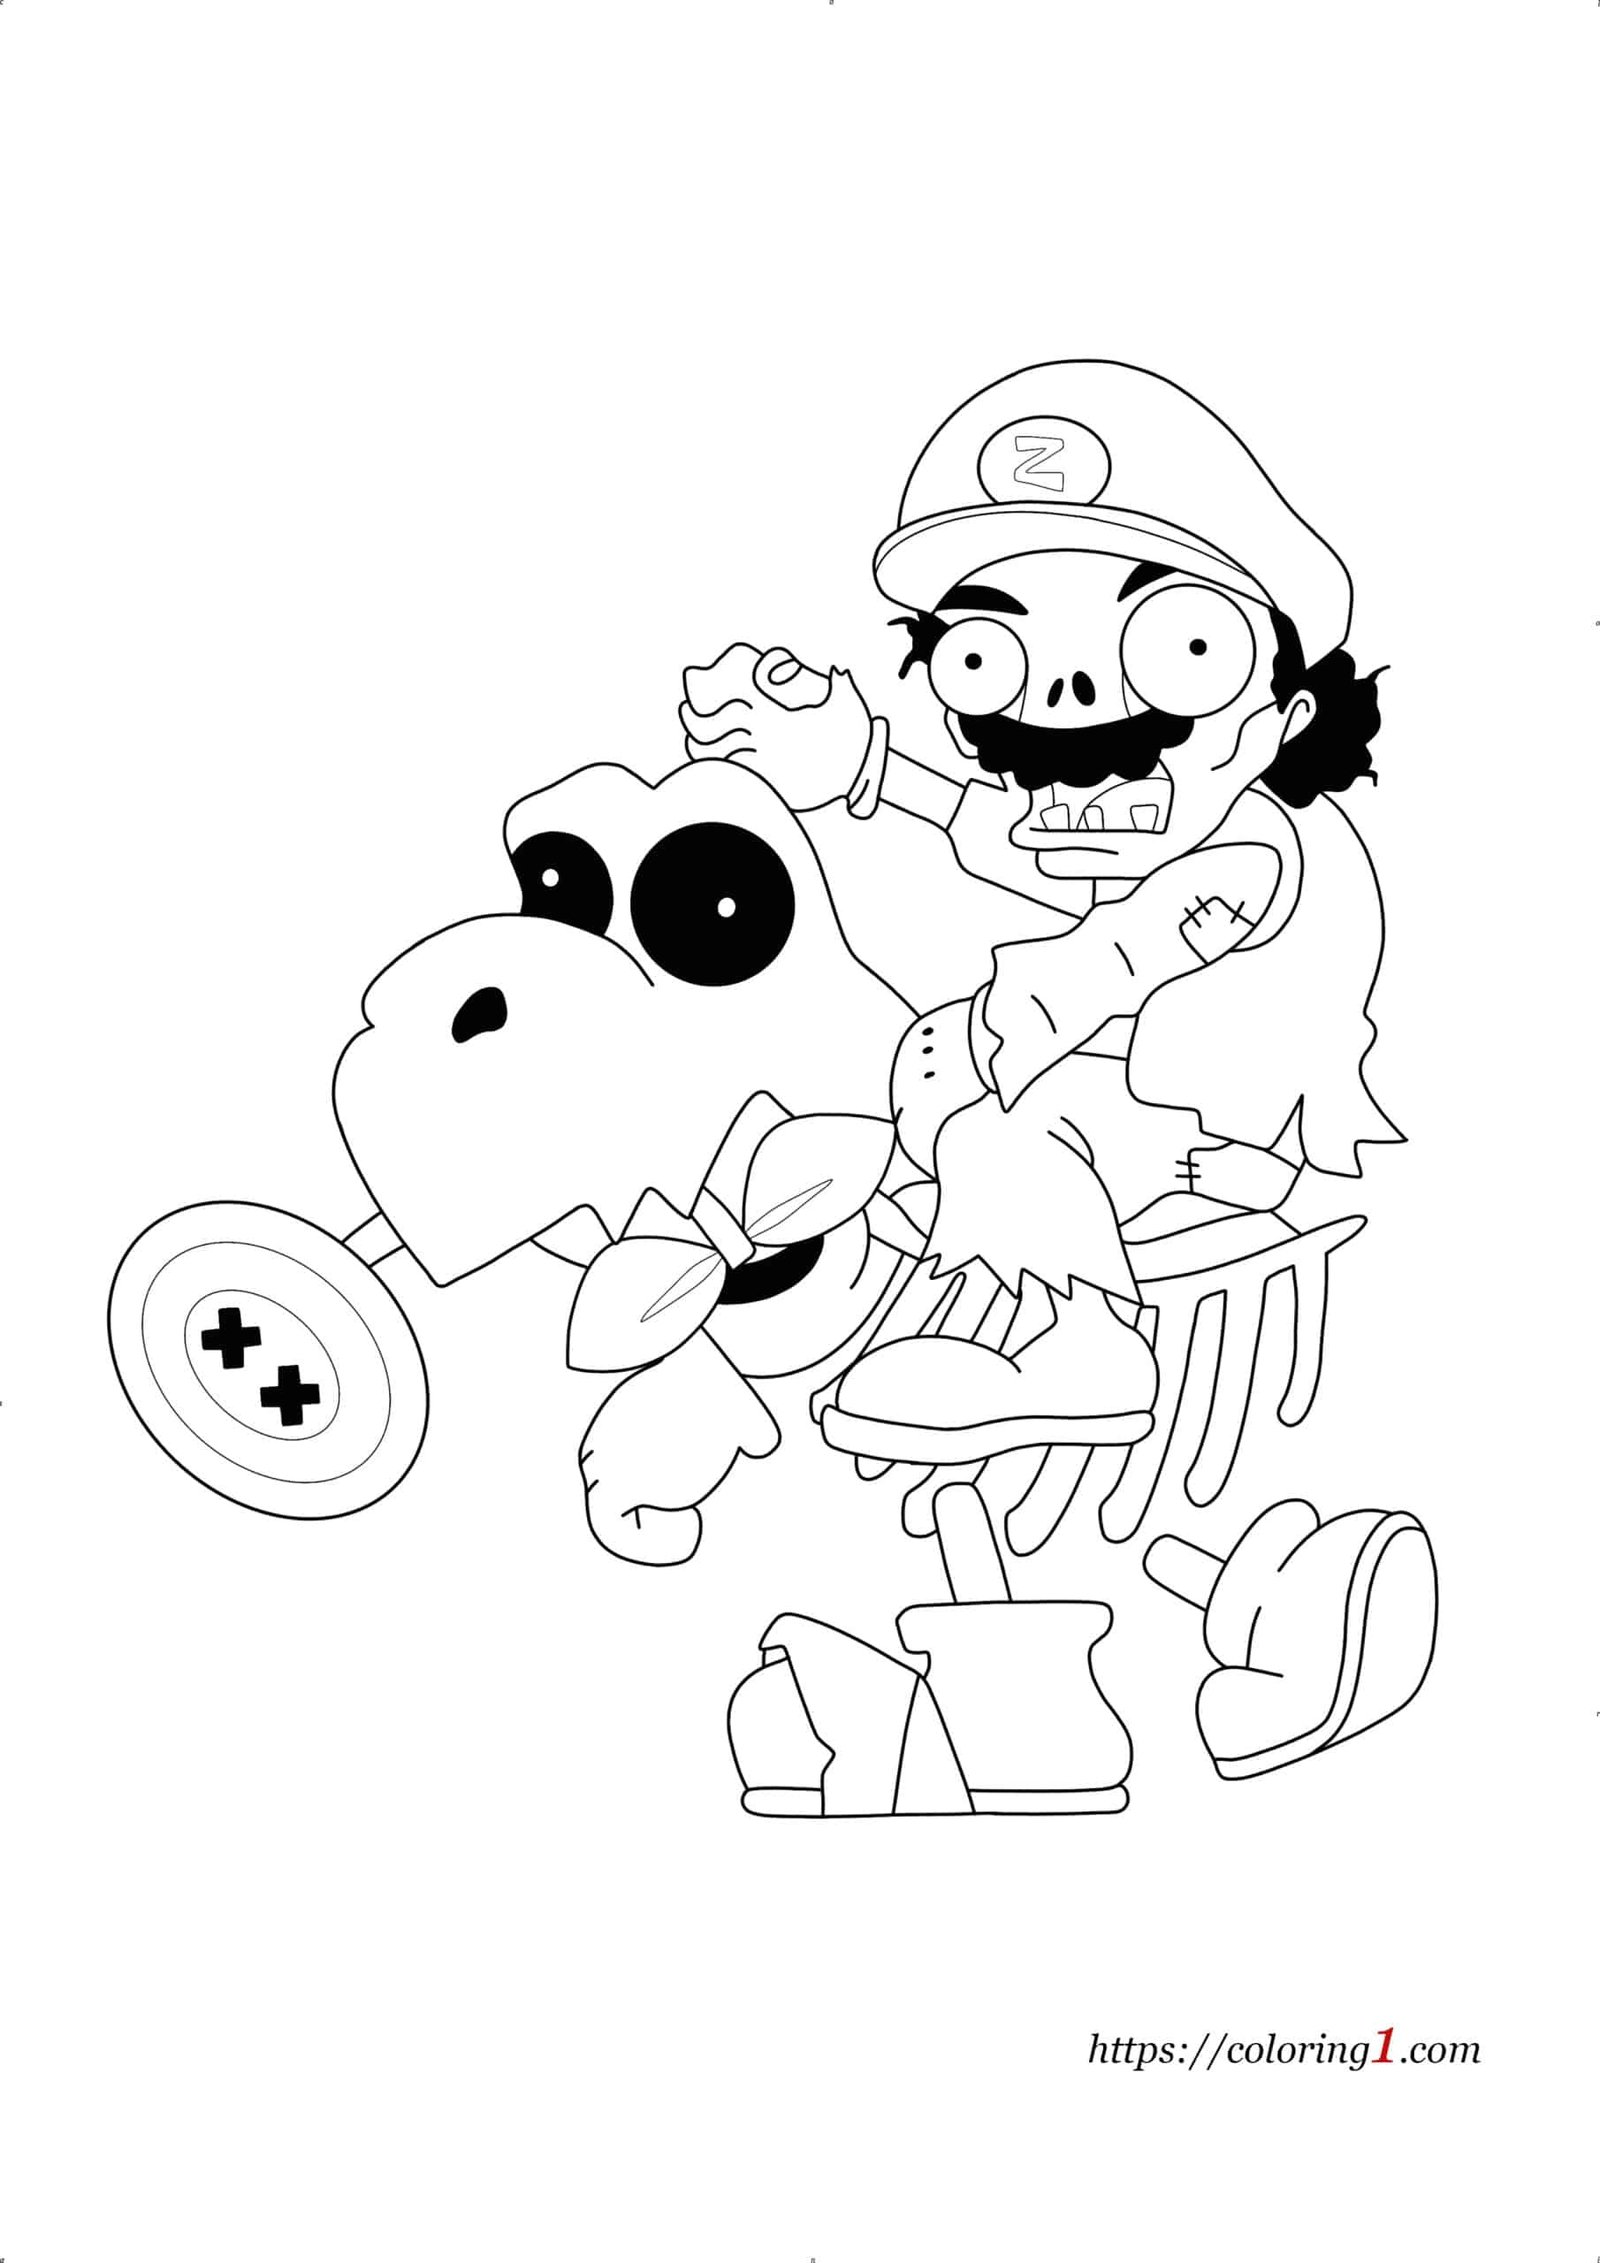 Mario Zombie coloring page